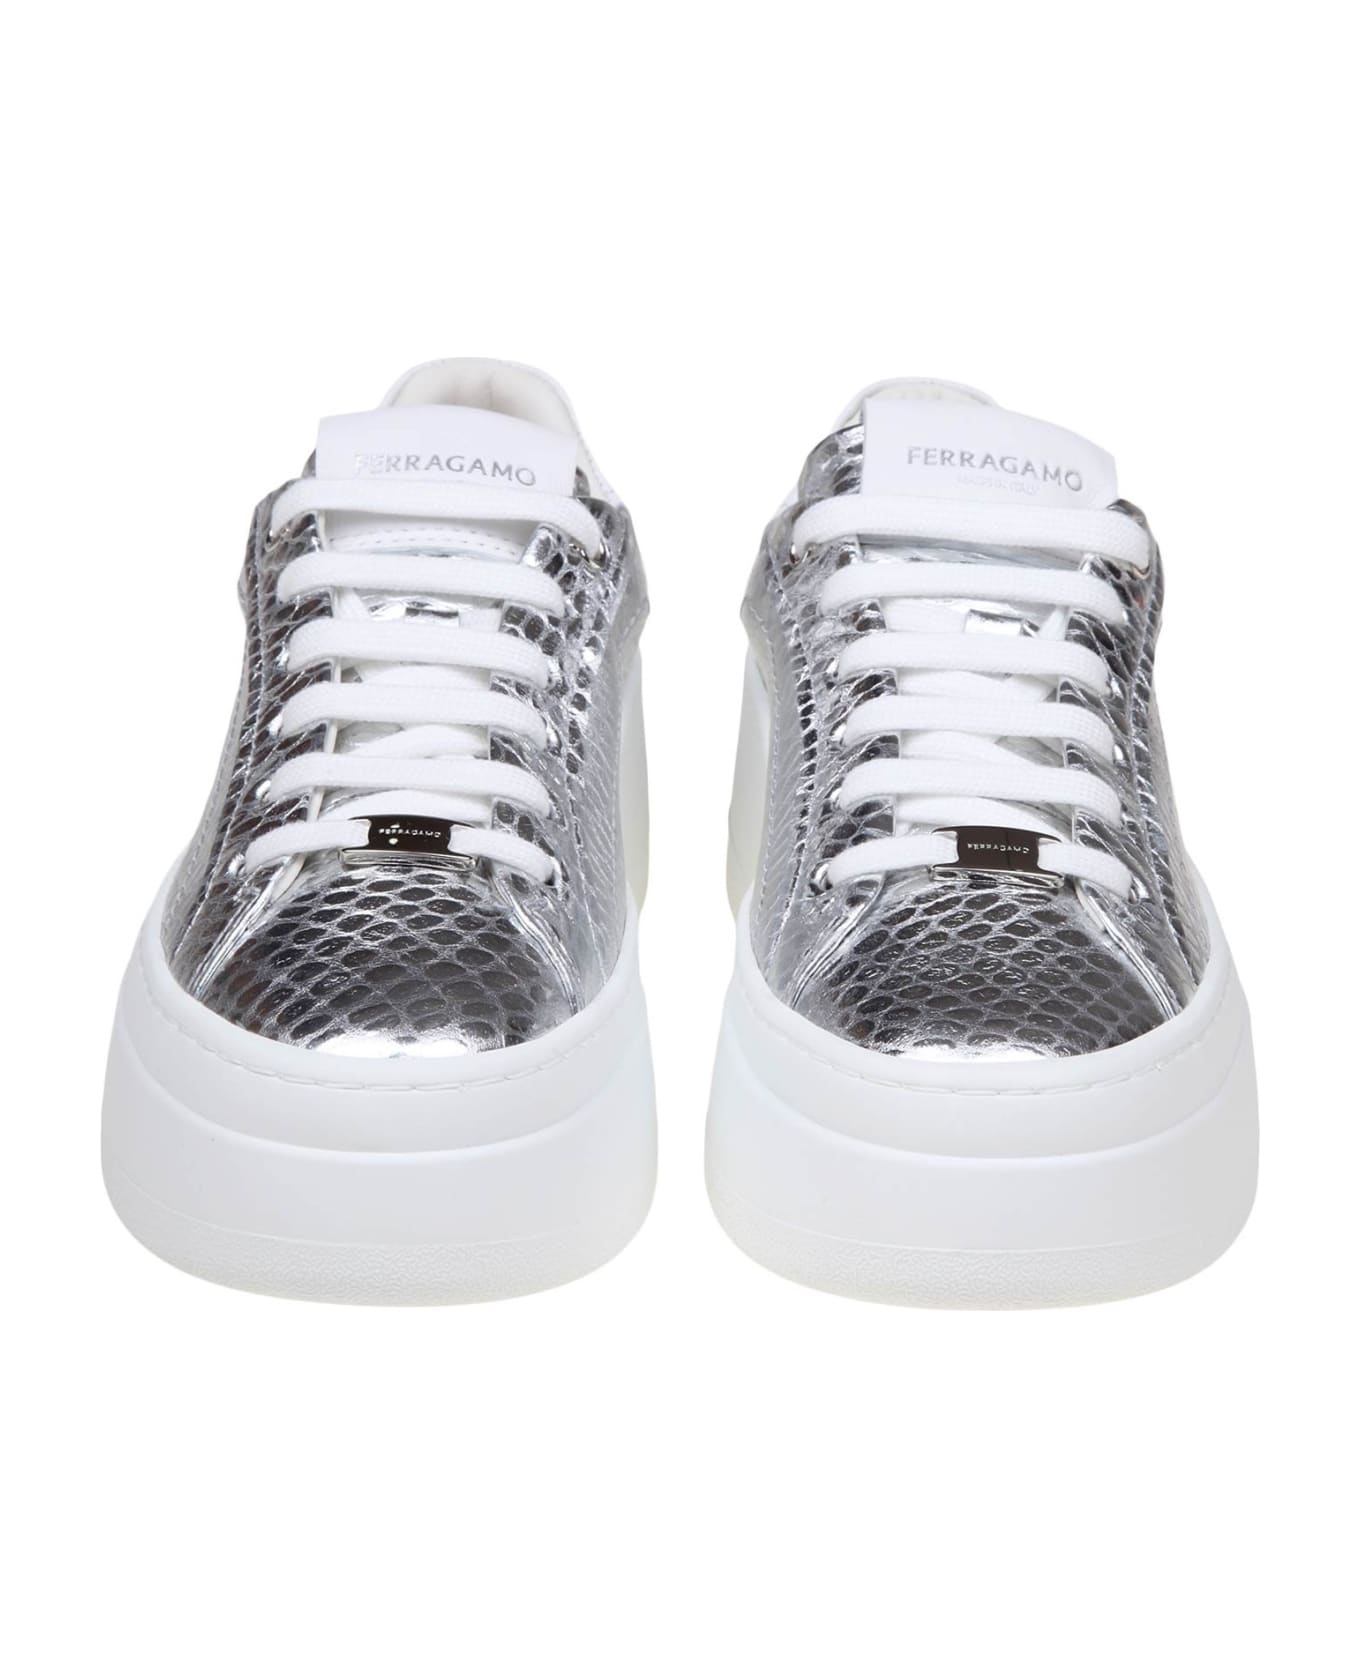 Ferragamo Sneakers Dahlia In Pelle Colore Argento - Silver